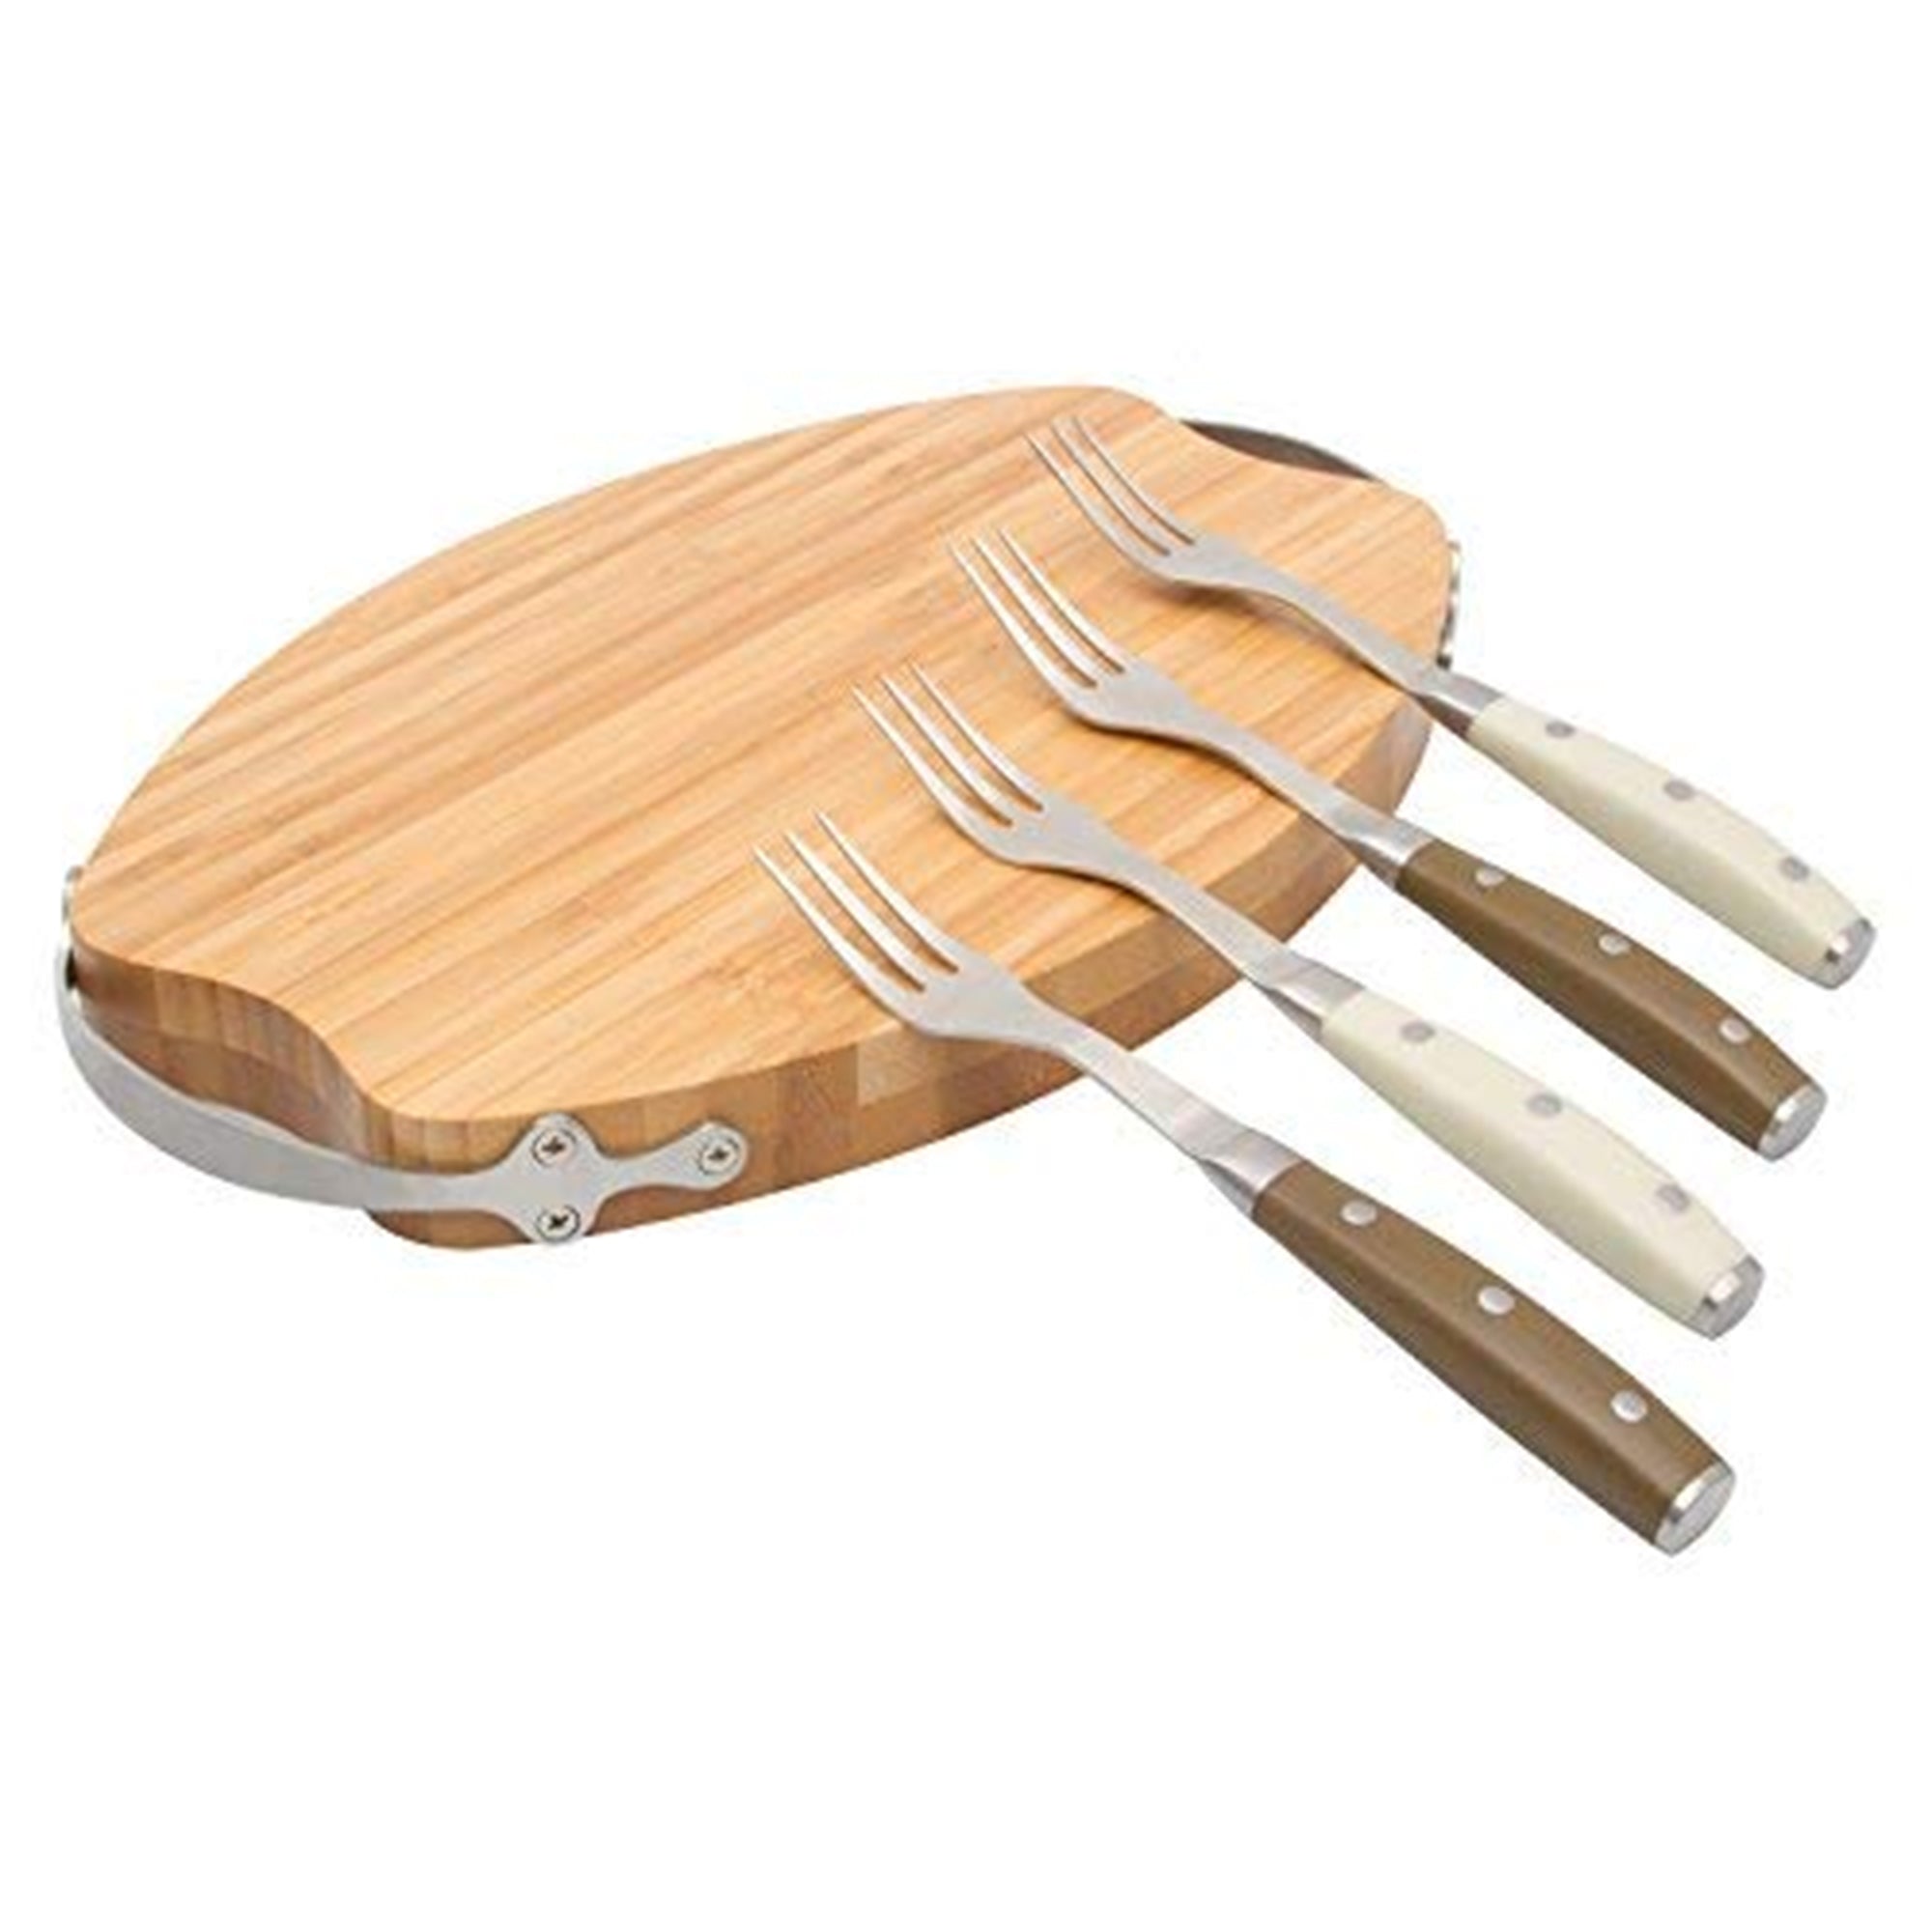 La Cote Multi Use Bamboo Cheese Bread Cutting Serving Board (Medium)